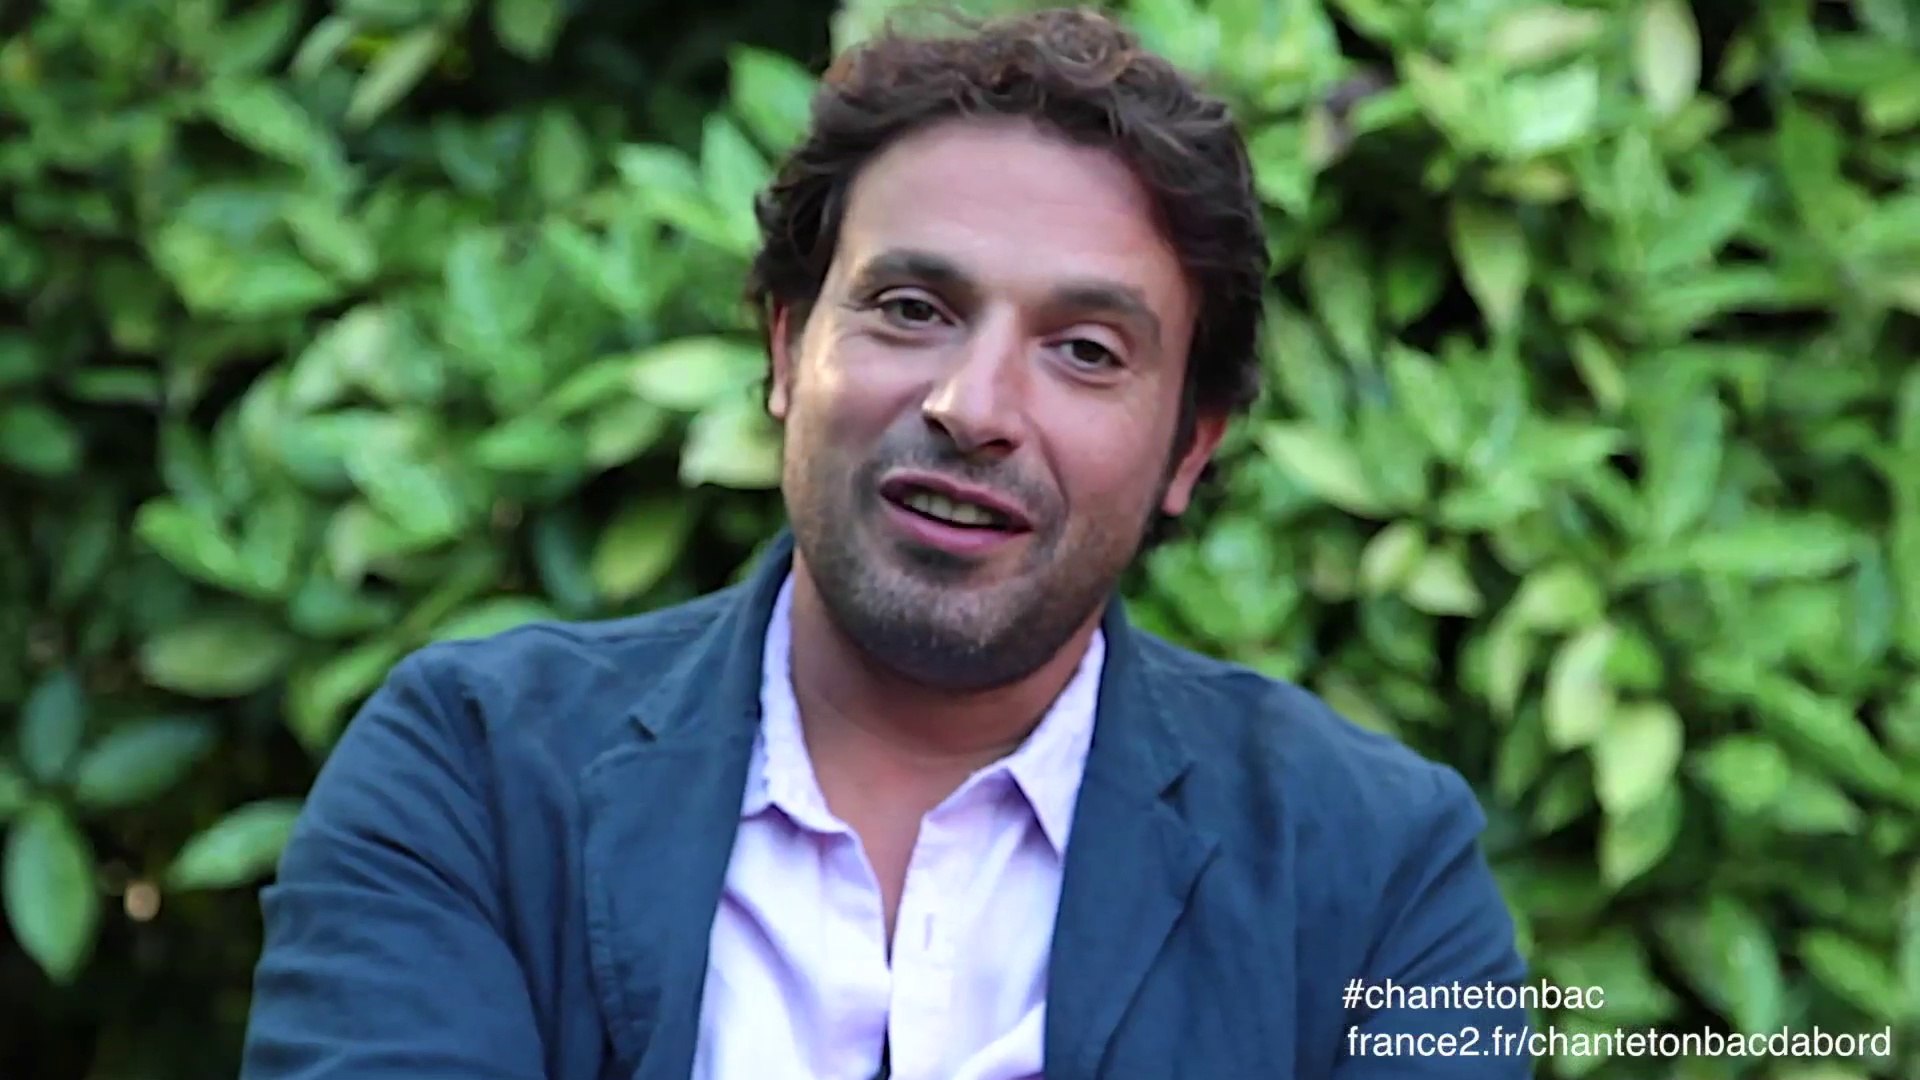 Chantetonbac Bruno Salomone - Acteur dans la série "Fais pas ci, fais pas  ça" sur France 2 - Vidéo Dailymotion